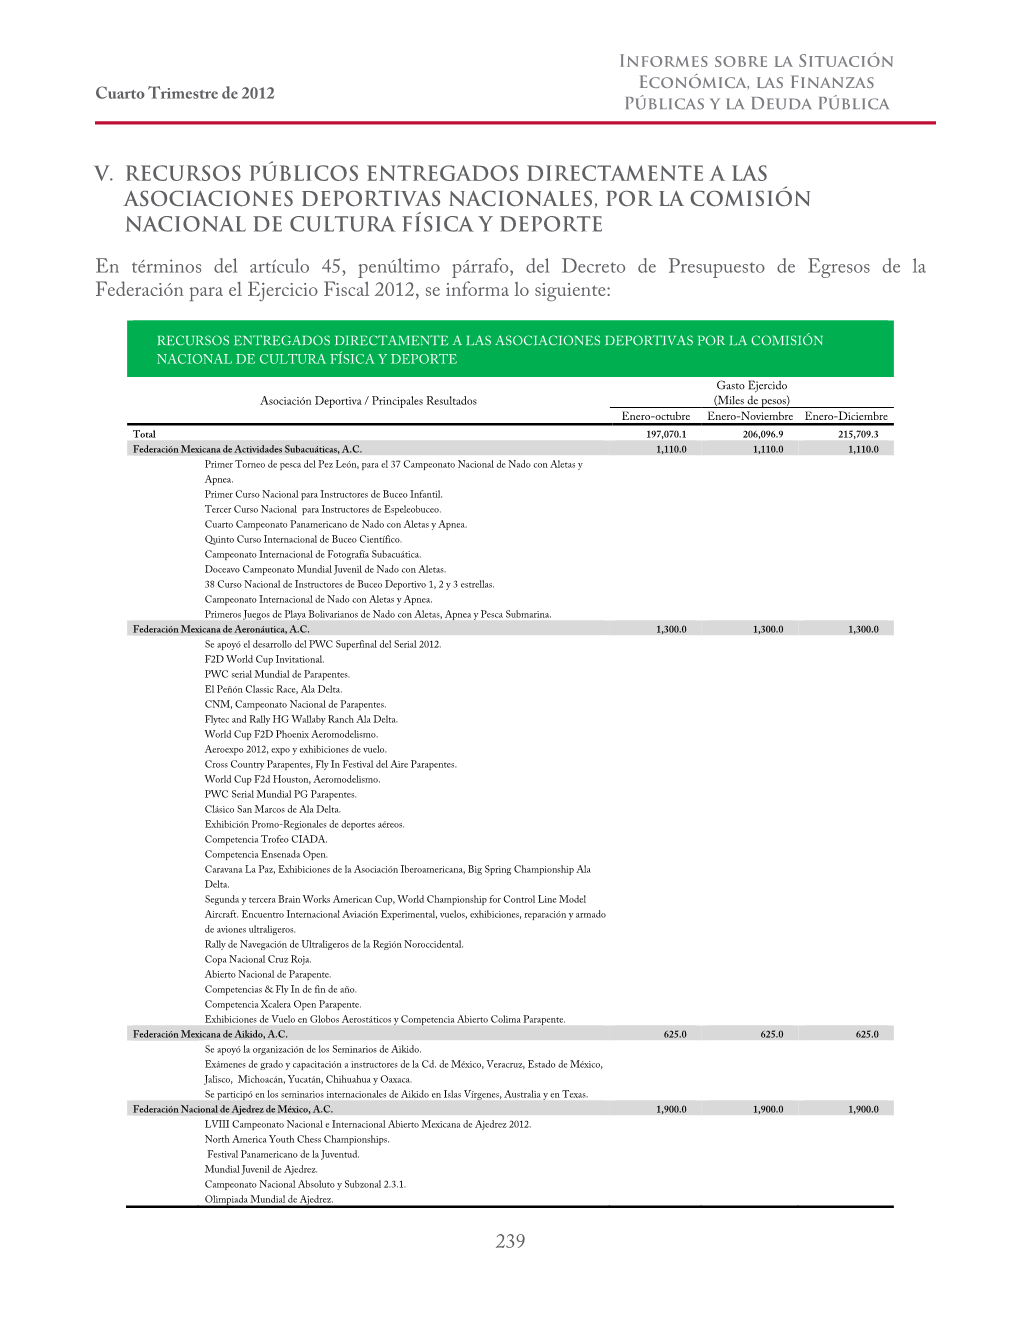 239 V. Recursos Públicos Entregados Directamente a Las Asociaciones Deportivas Nacionales, Por La Comisión Nacional De Cultura